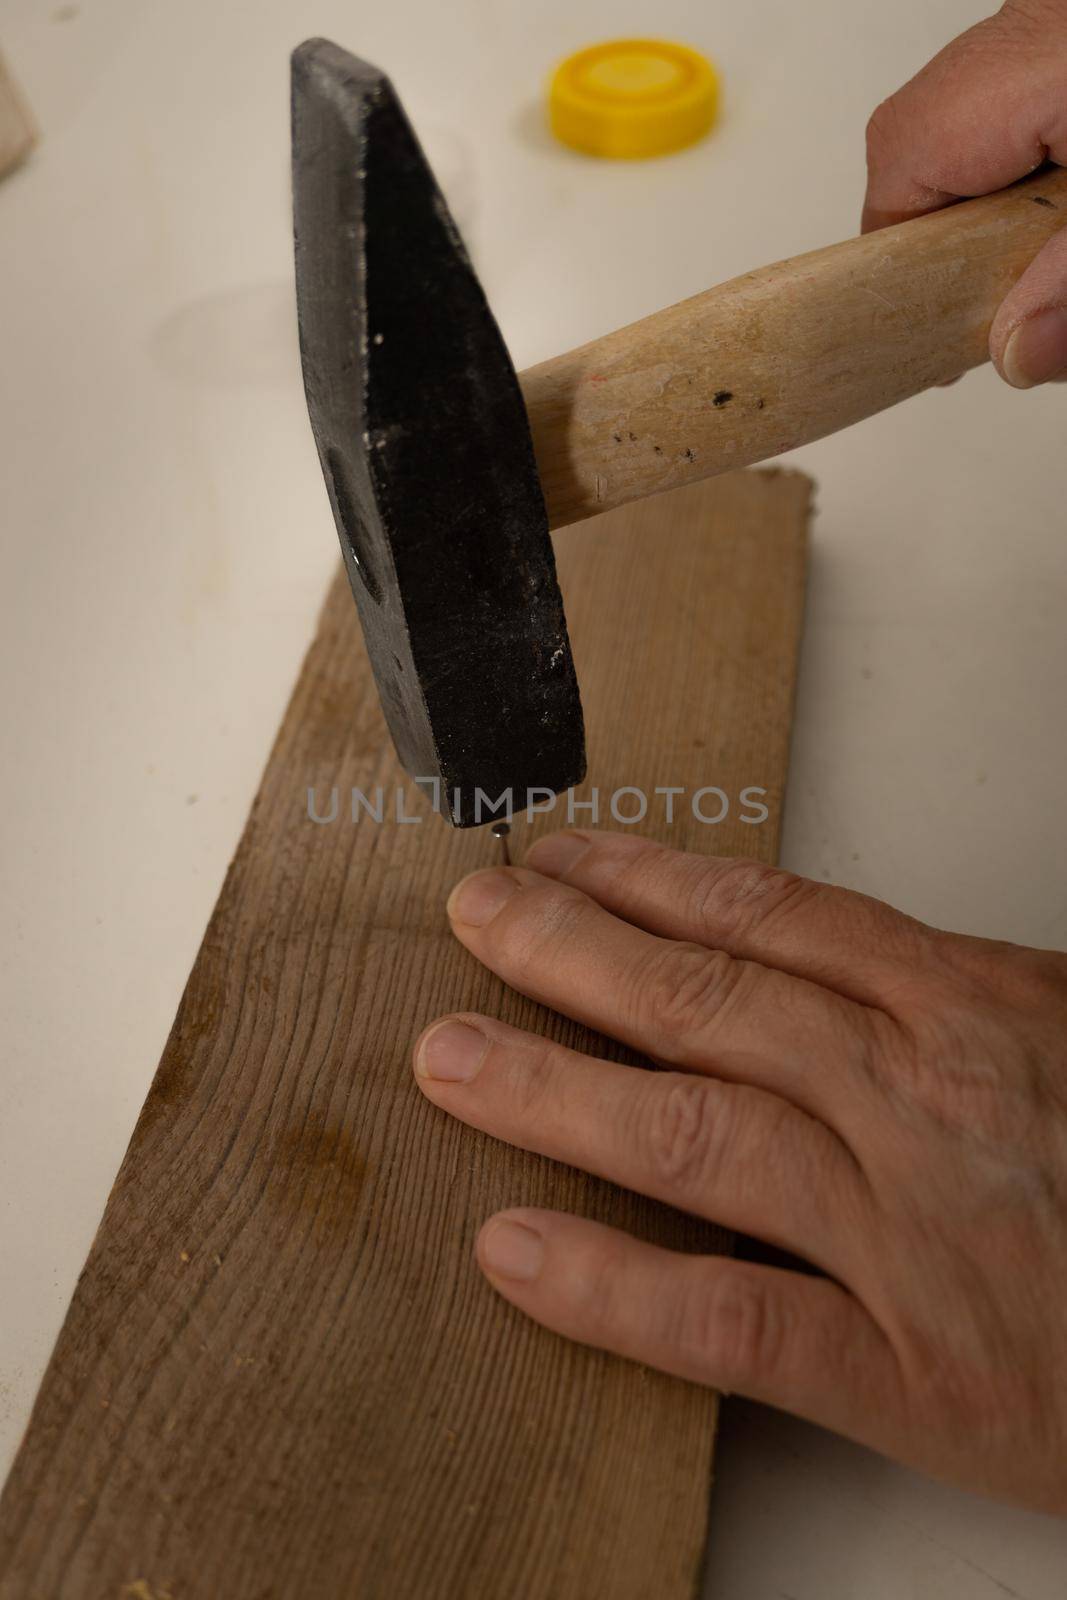 hammering a nail by joseantona